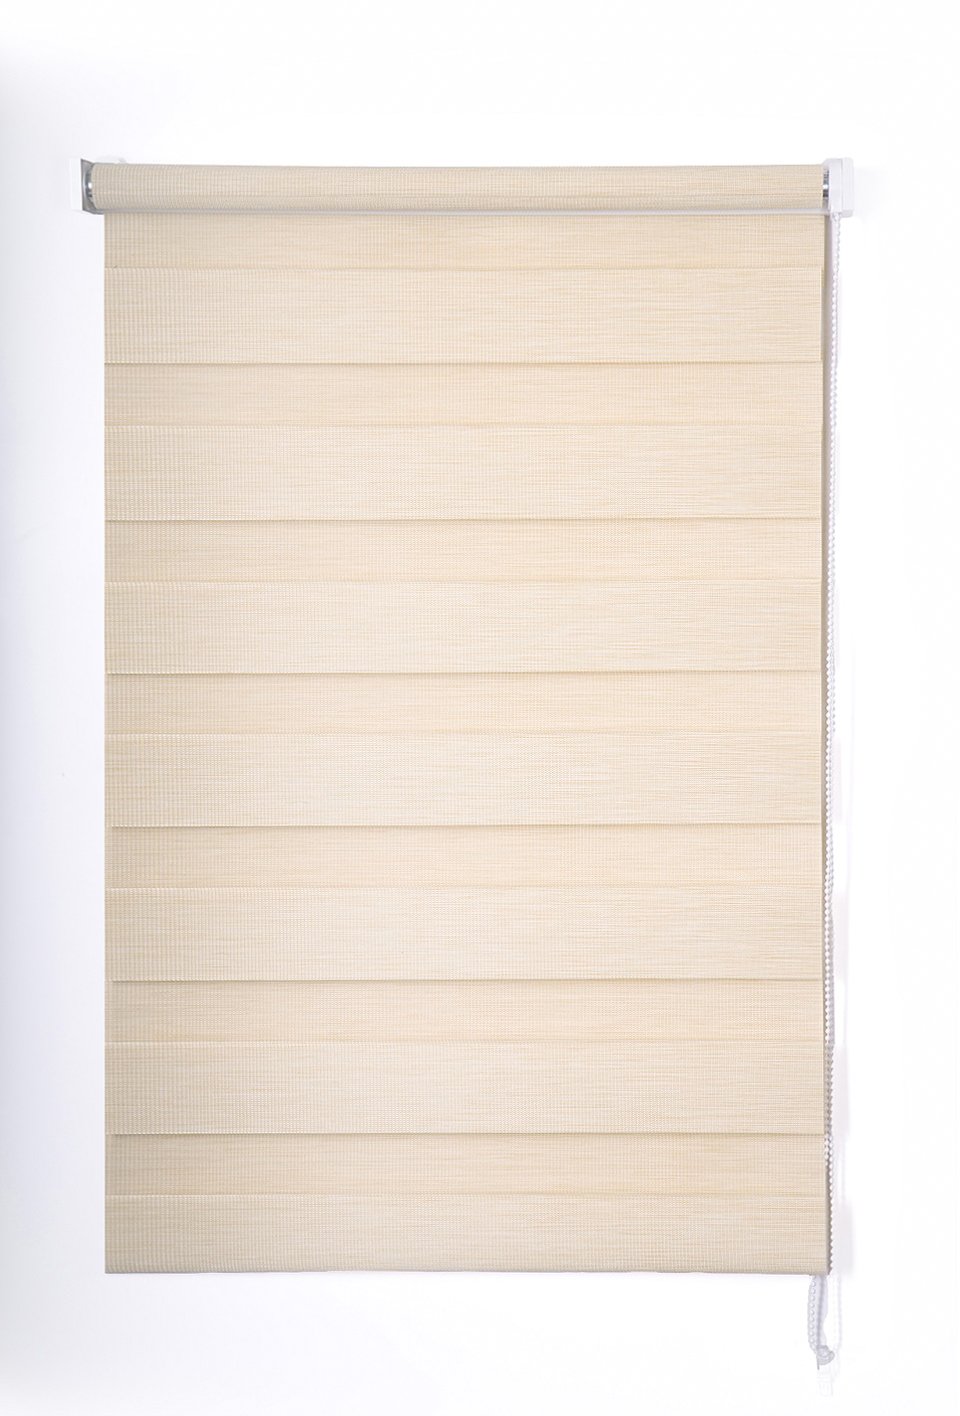 Klasikinė ritininė užuolaida VERONA D&N, smėlio sp., 160 x 170 cm, 100 % poliesteris